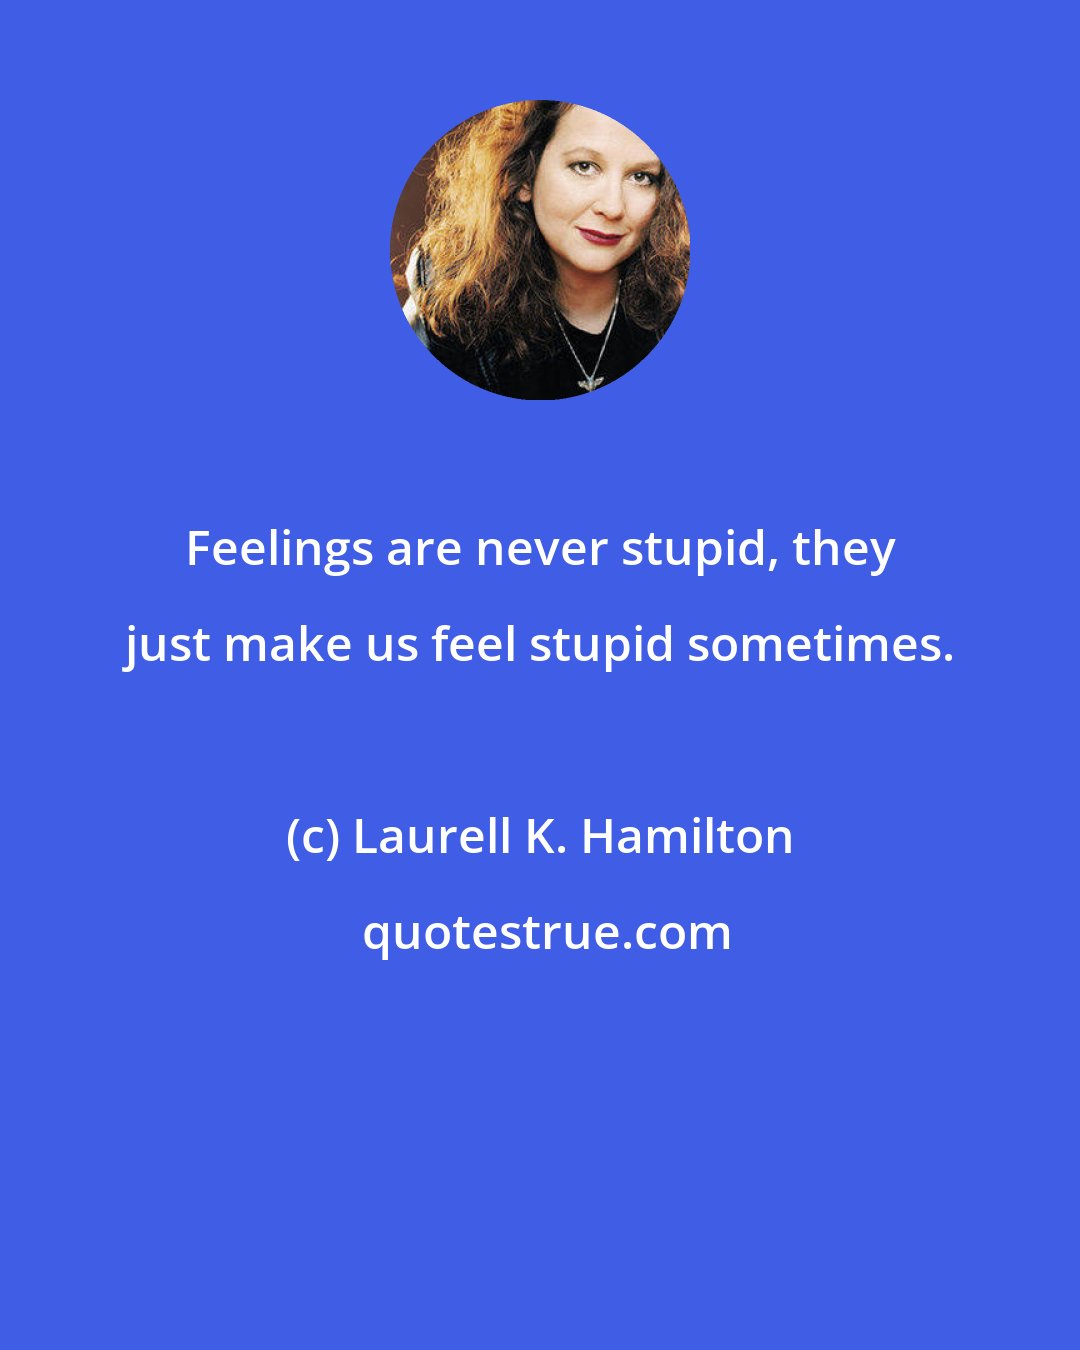 Laurell K. Hamilton: Feelings are never stupid, they just make us feel stupid sometimes.